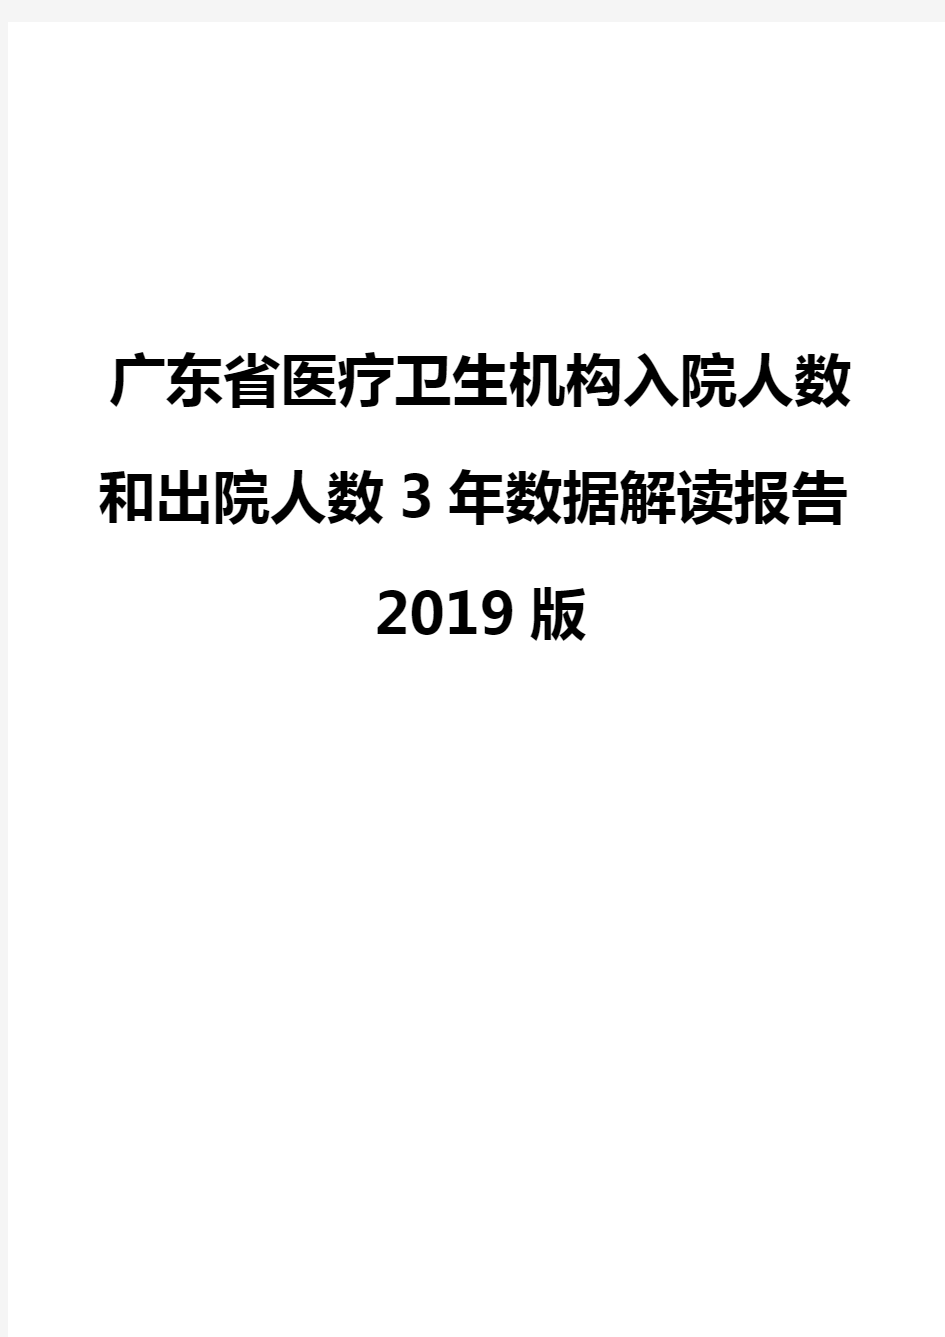 广东省医疗卫生机构入院人数和出院人数3年数据解读报告2019版